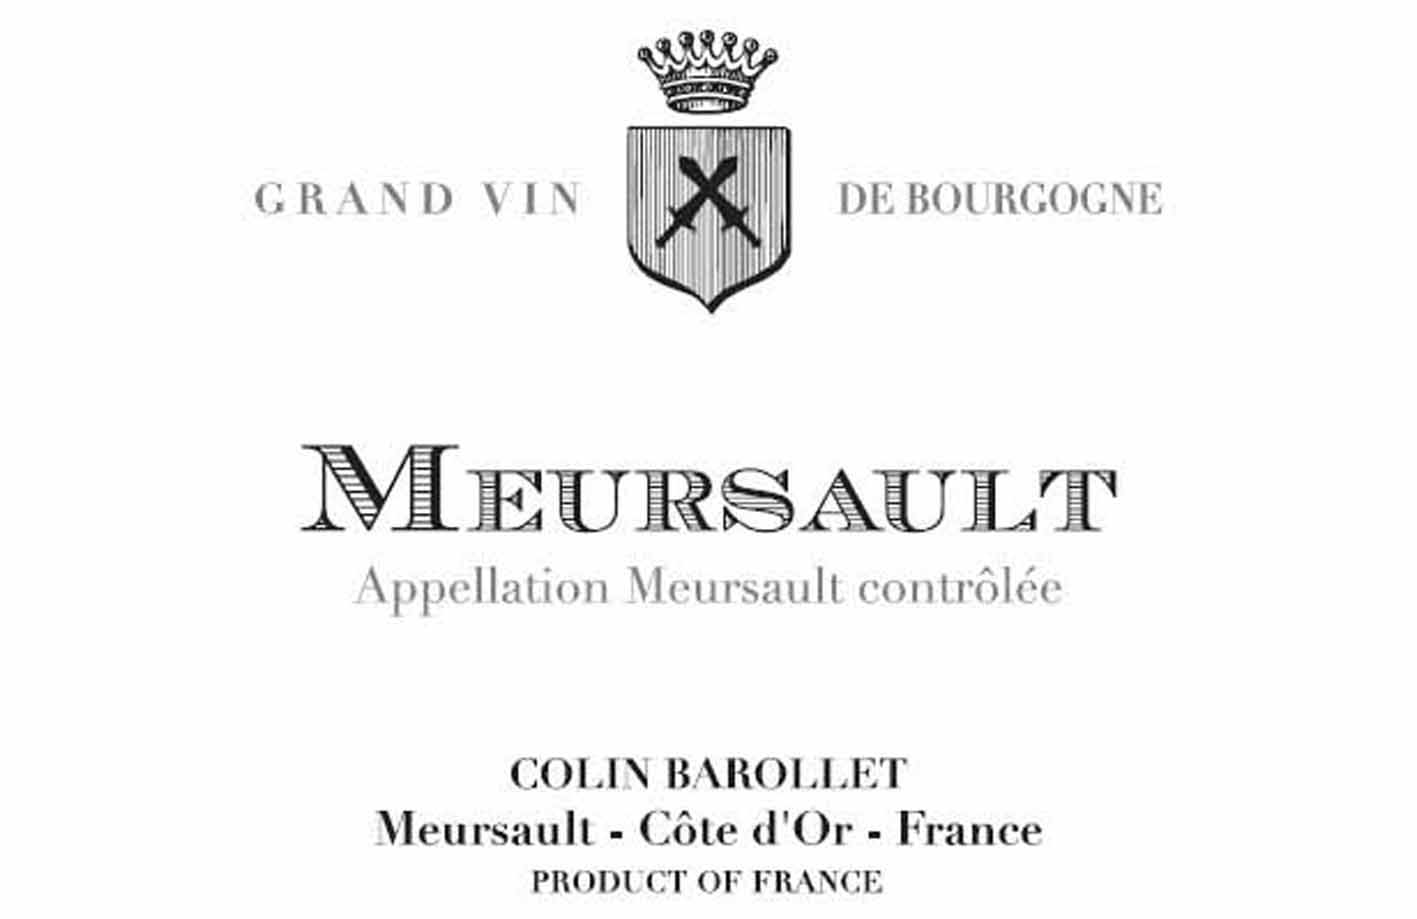 Colin Barollet - Meursault label